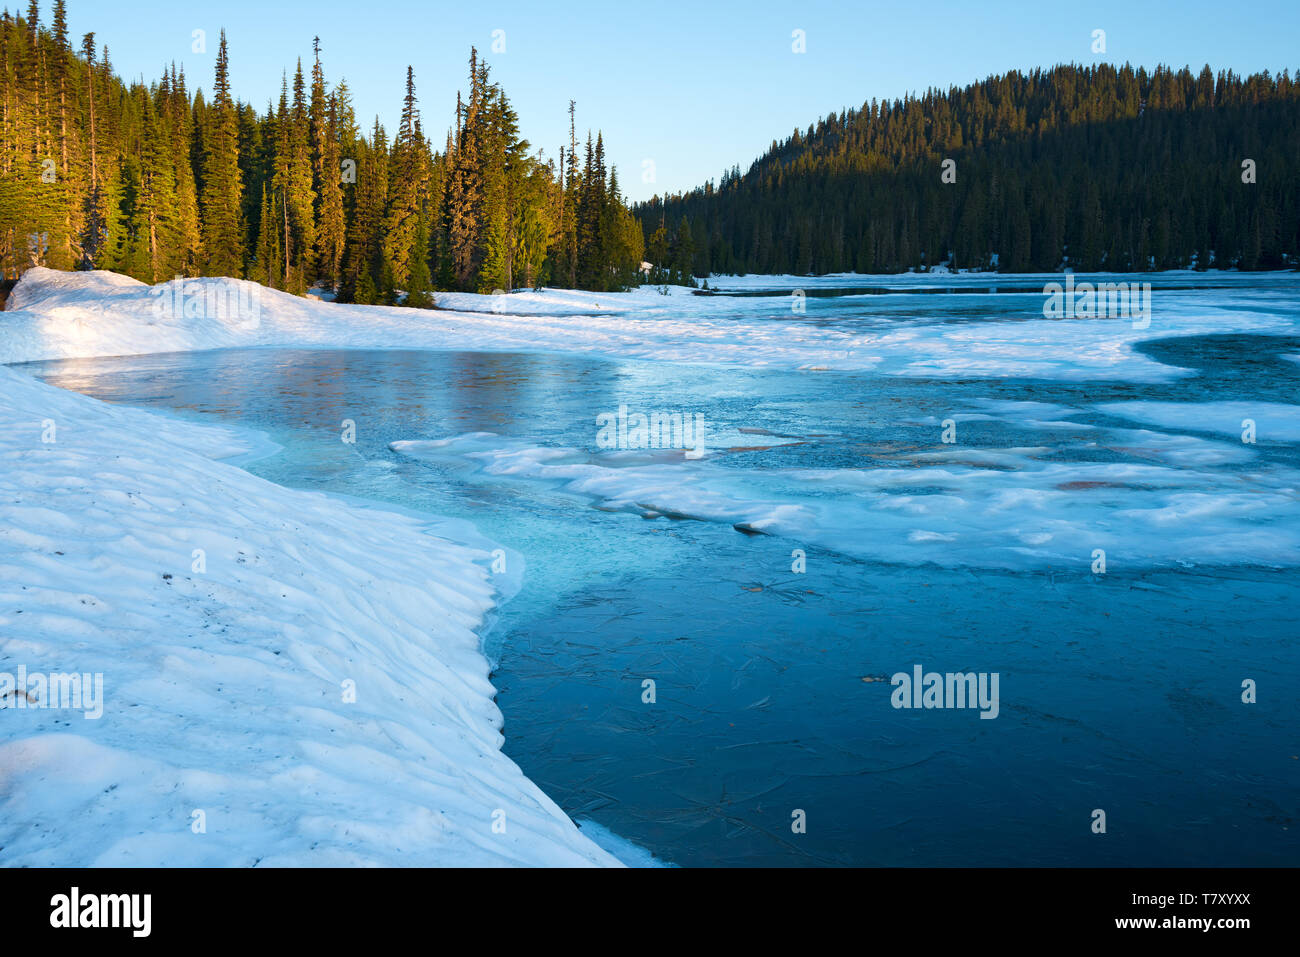 Frozen Reflection Lake at sunrise, Mount Rainier National Park, Washington State, USA Stock Photo